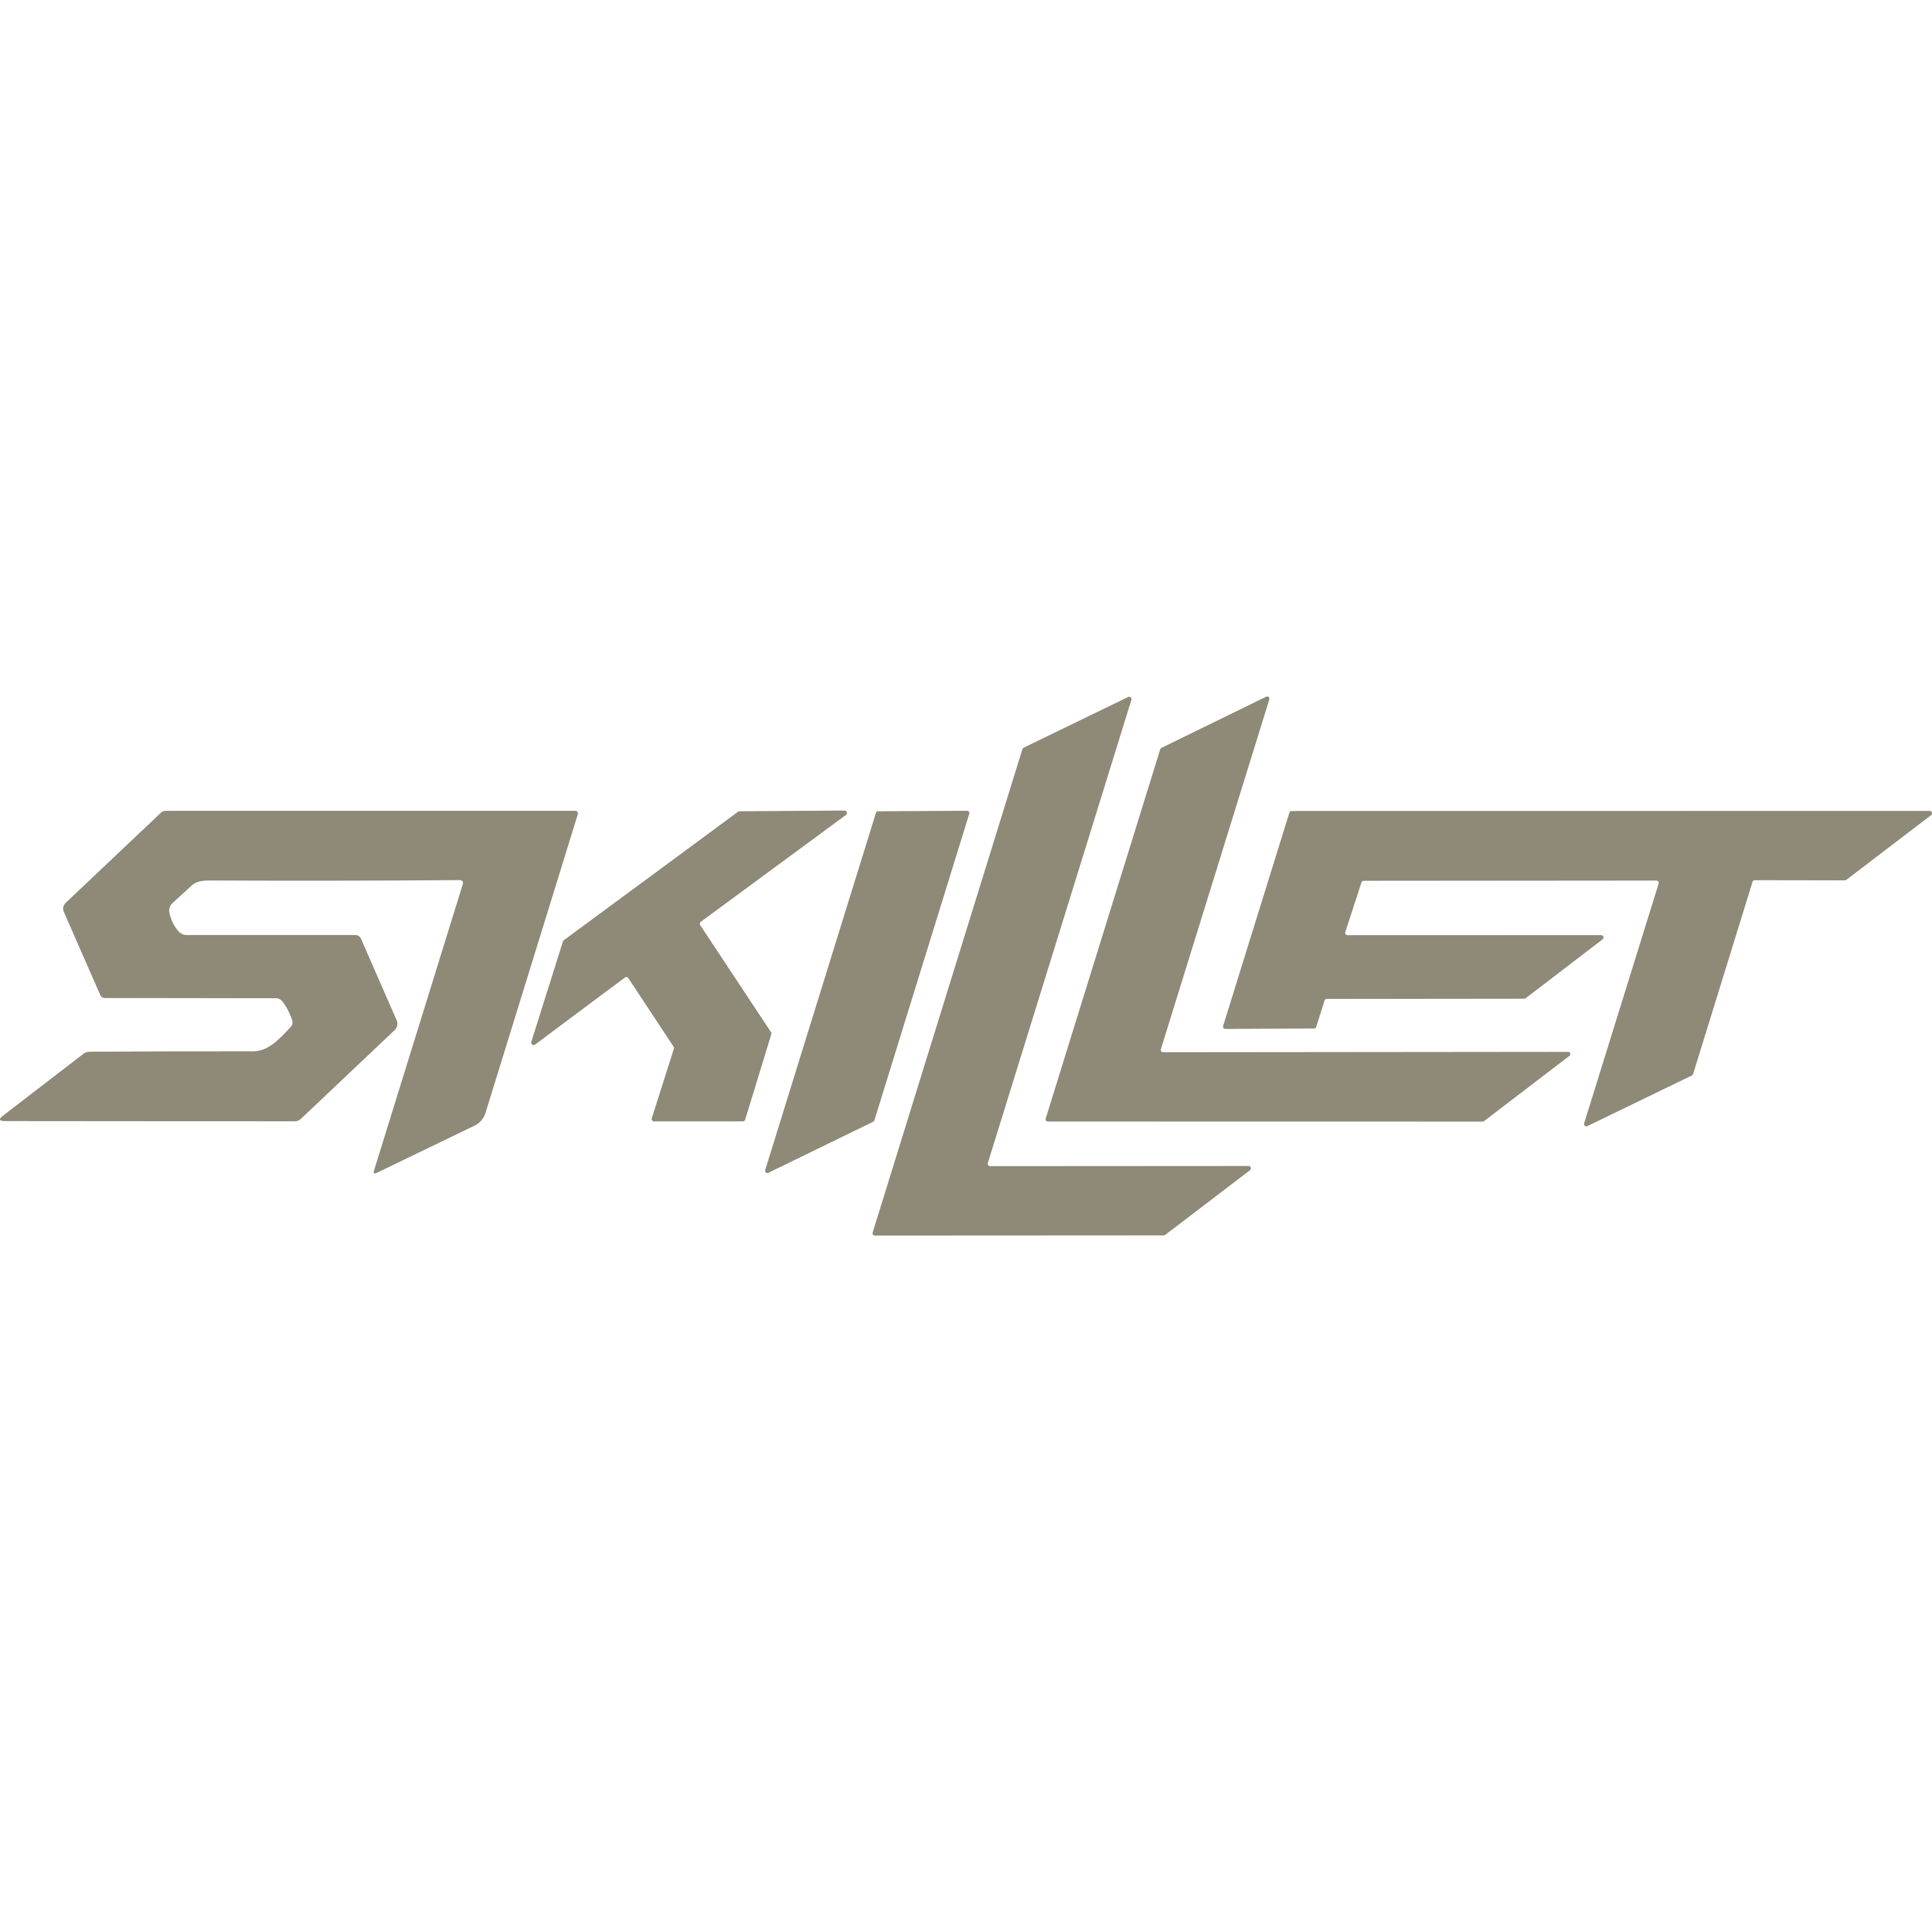 Skillet Logo  Transparent Image